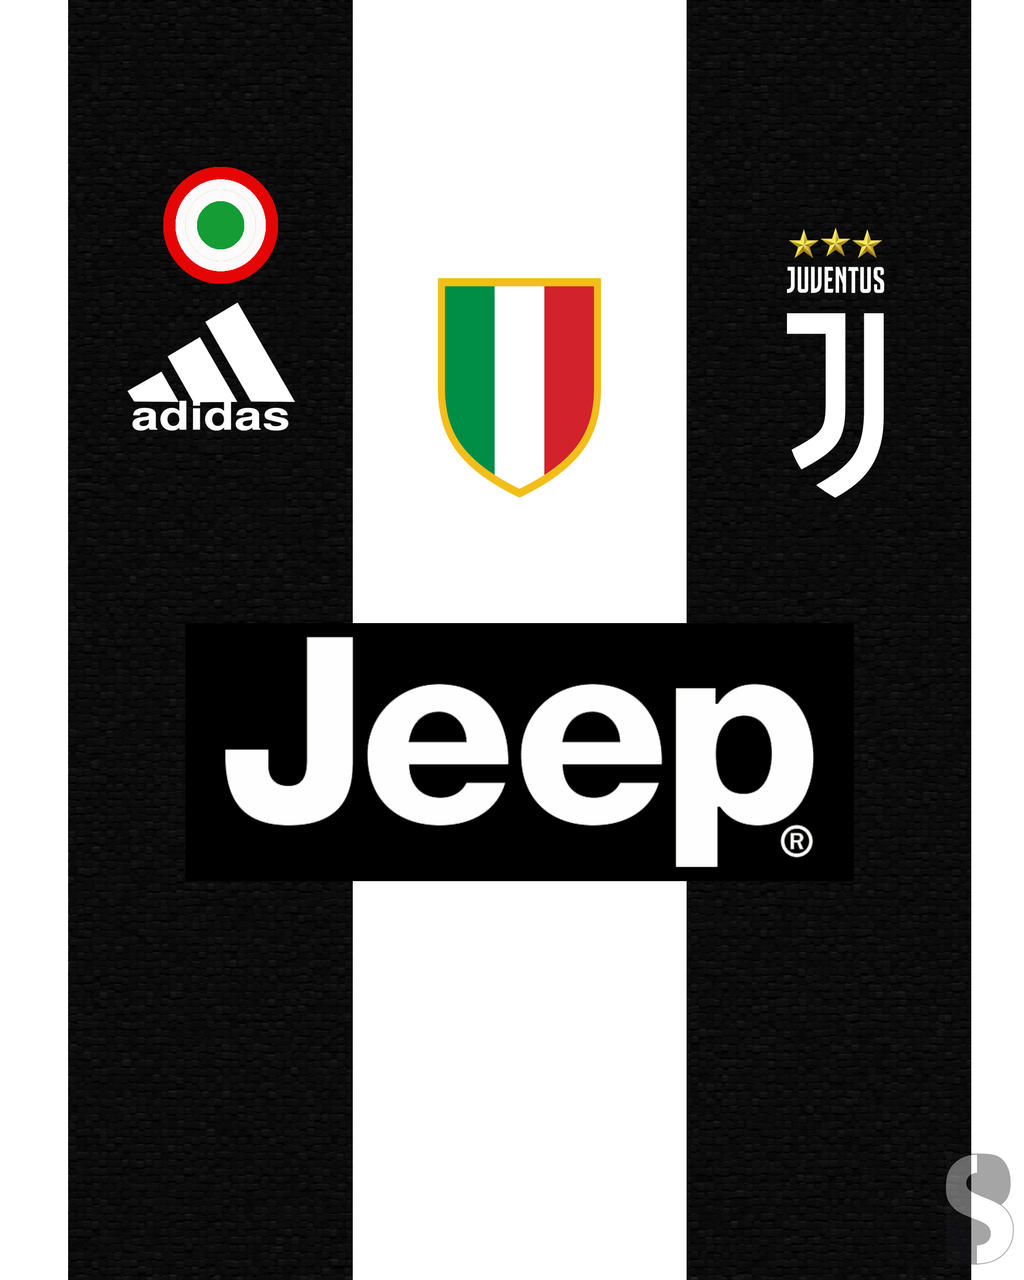 Juventus Home Kit 20182019 By Brunodesigng On Deviantart